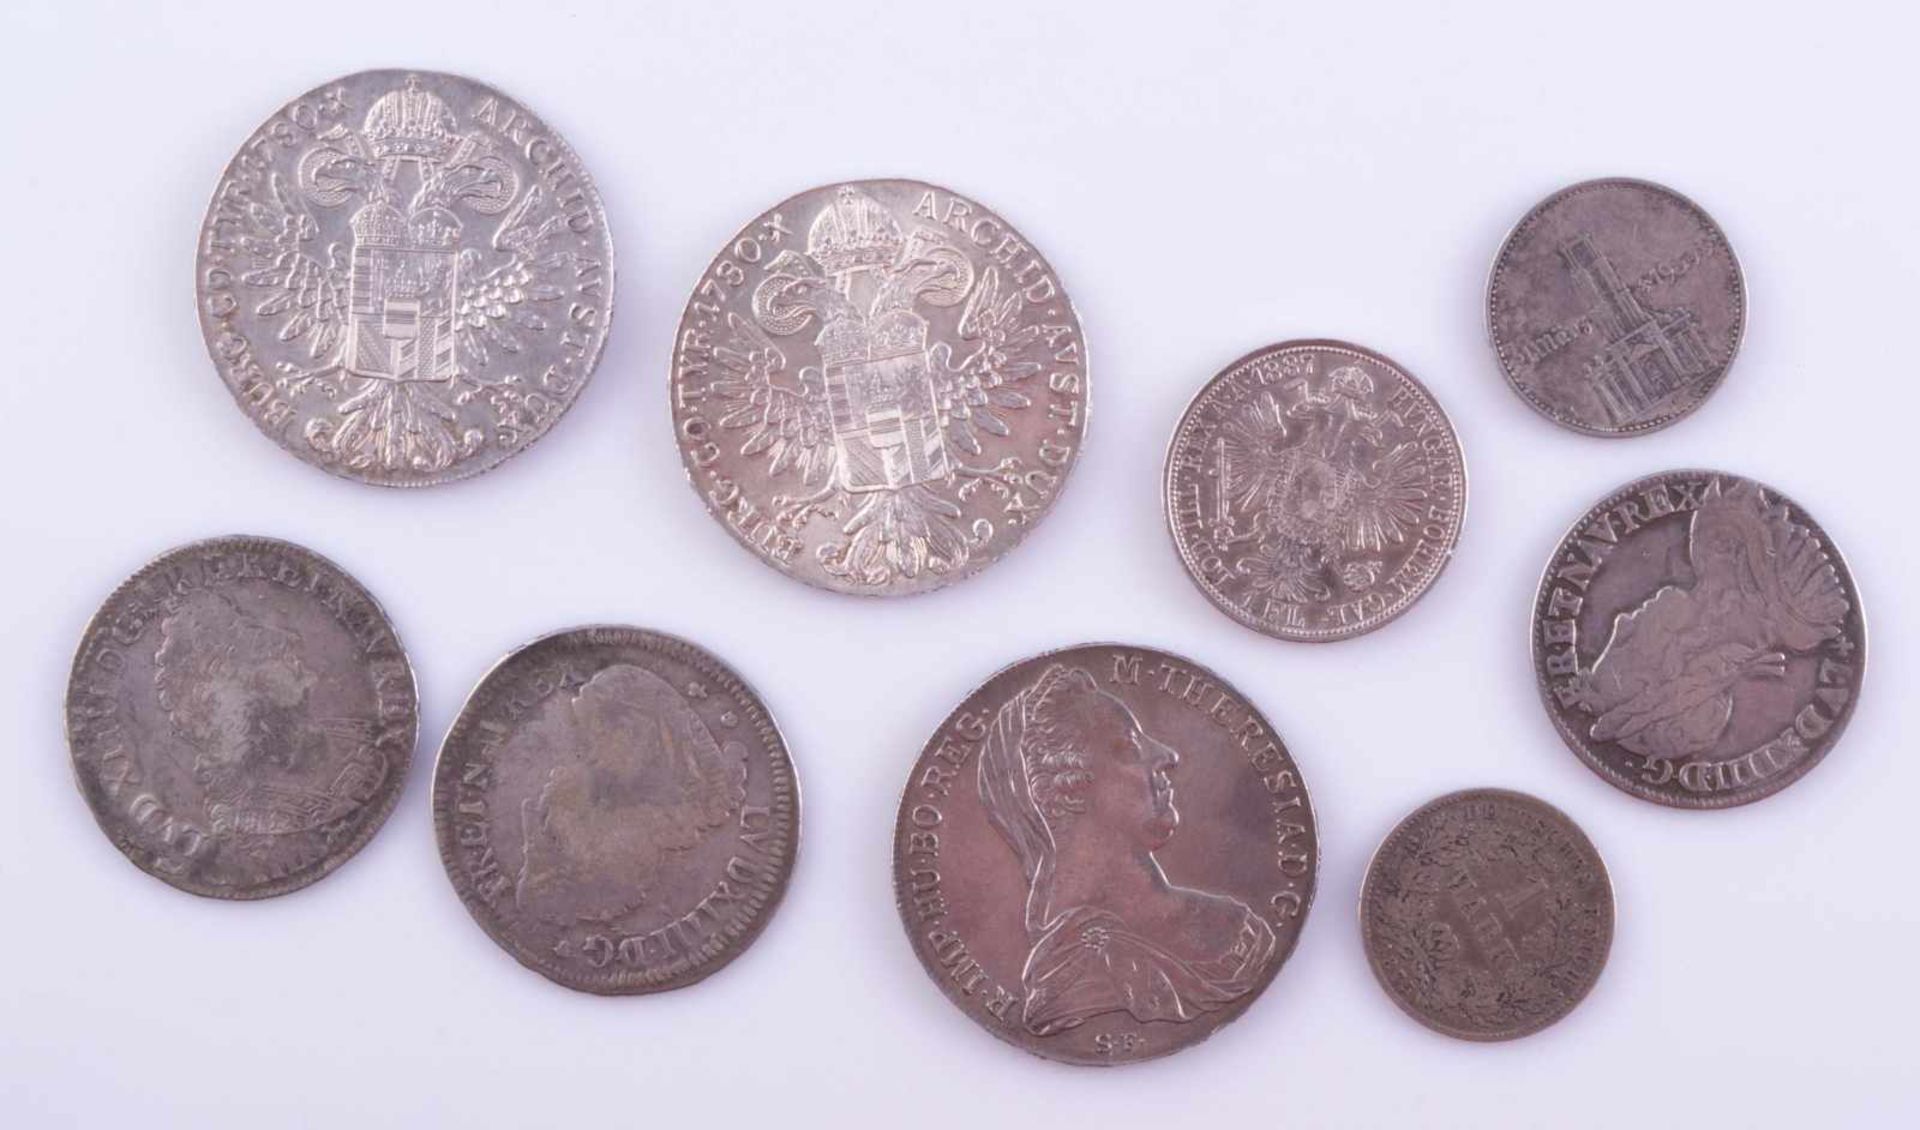 Konvolut Silbermünzen von 1655-19339 Stück, dabei, 3 x Maria Theresien Taler, 2 x franz. Louidor ca. - Image 2 of 2